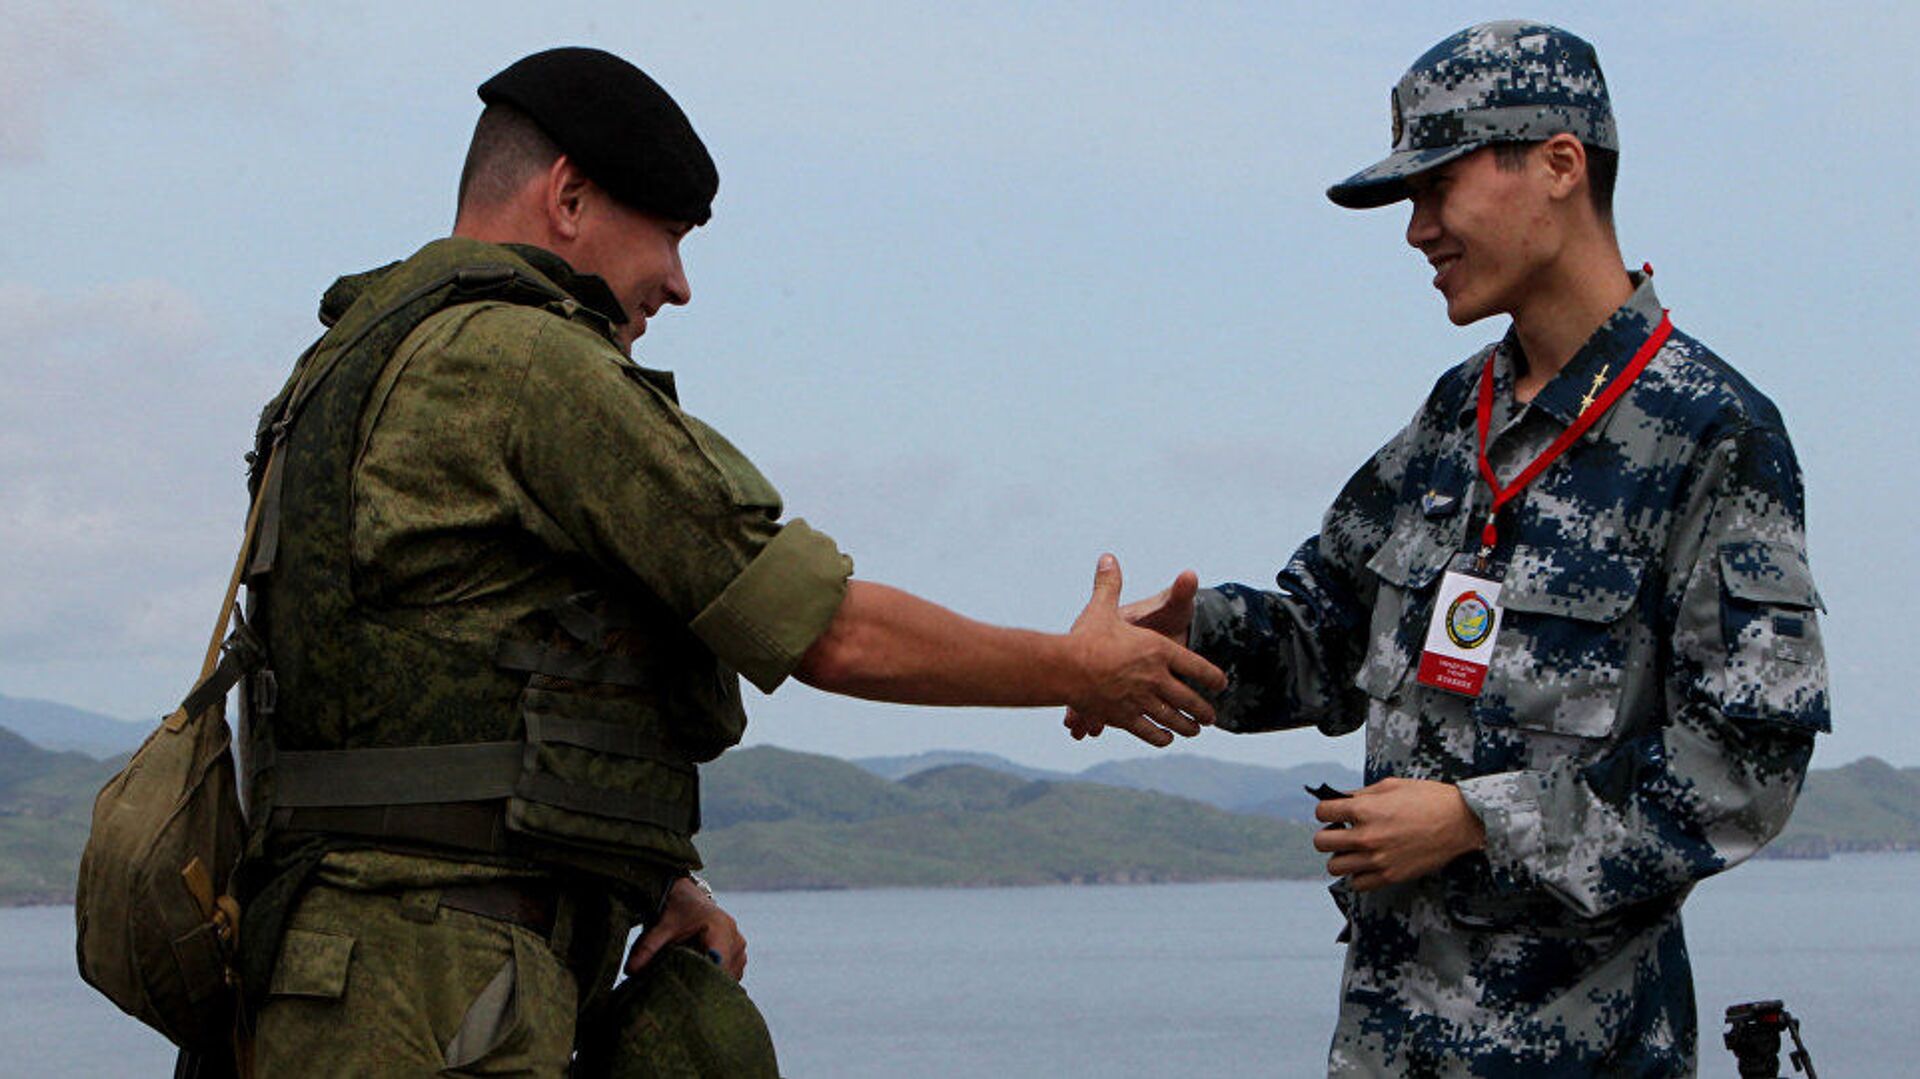 优享资讯 | 乌俄边界情势紧张 美俄军方首长通话